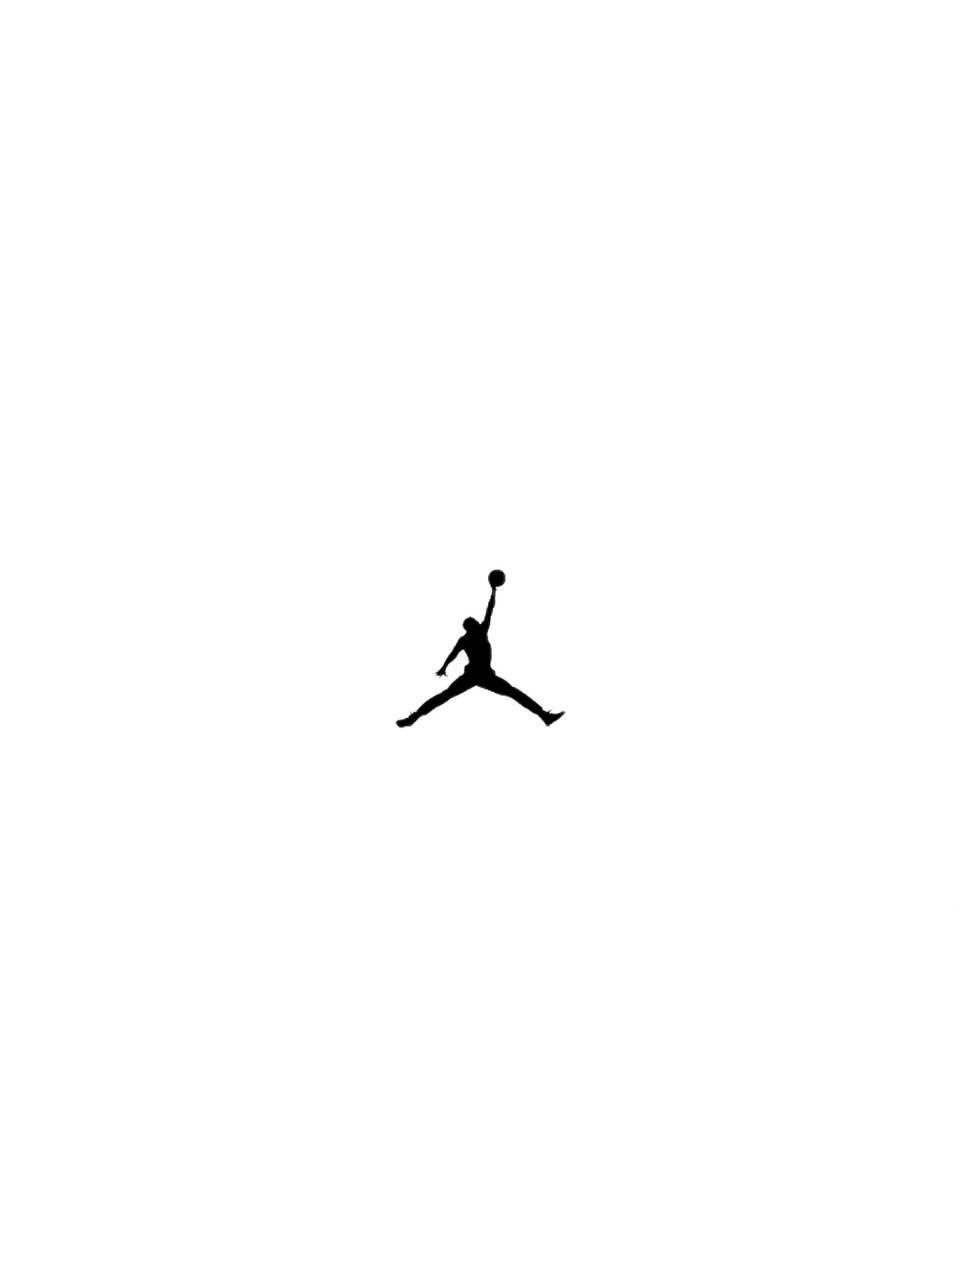 Nike Air Jordan Logo Wallpapers - Top Free Nike Air Jordan Logo ...